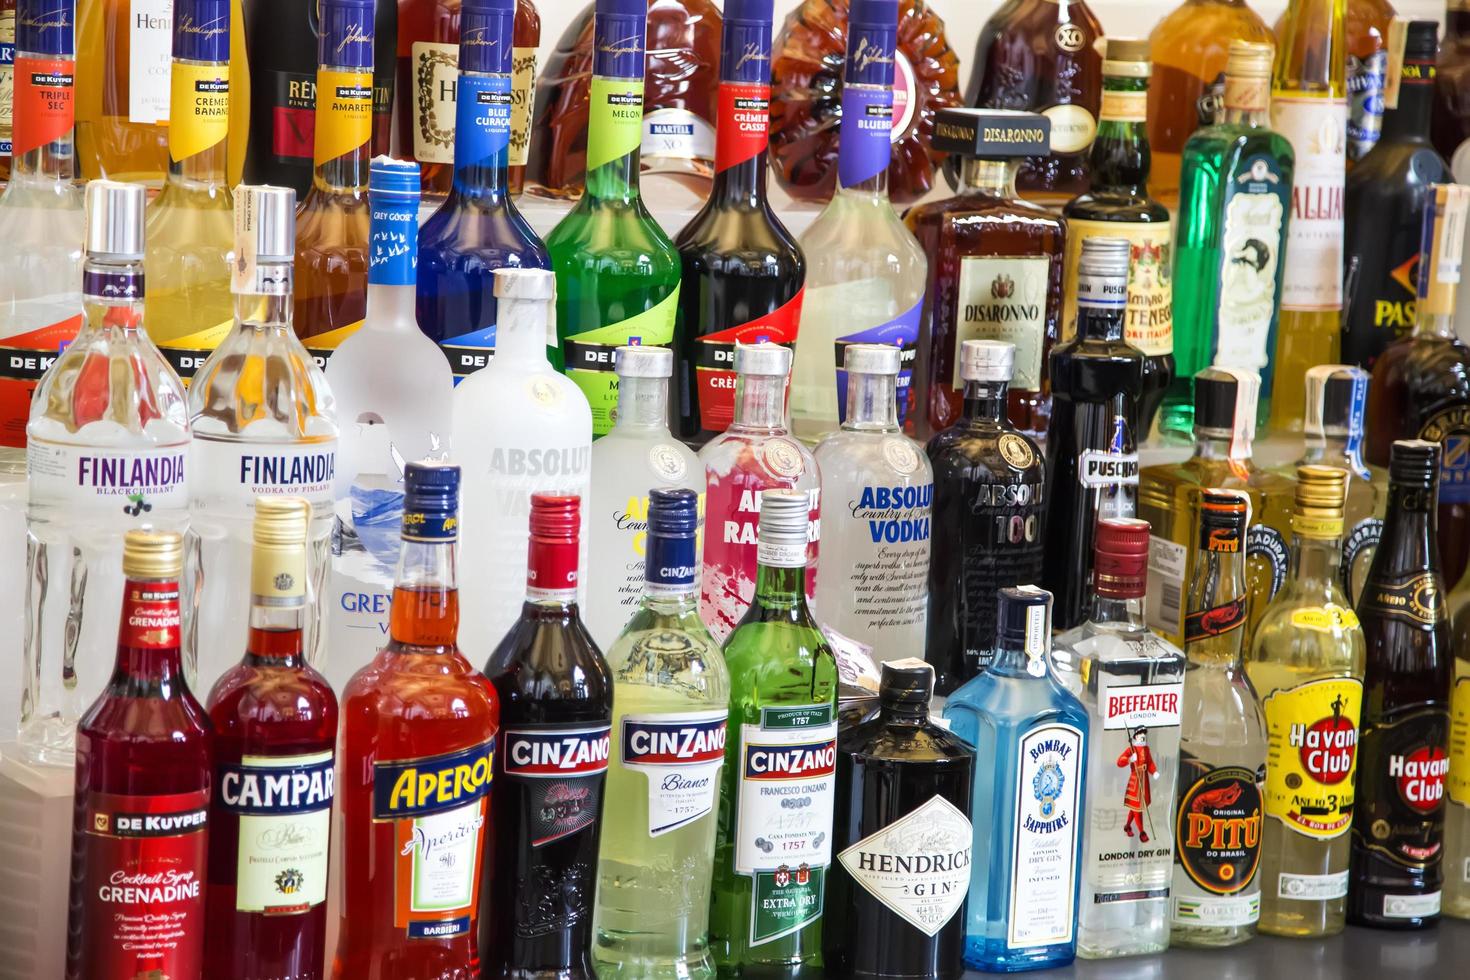 belgrado, sérvia, 2014 - várias garrafas de álcool no bar. foto